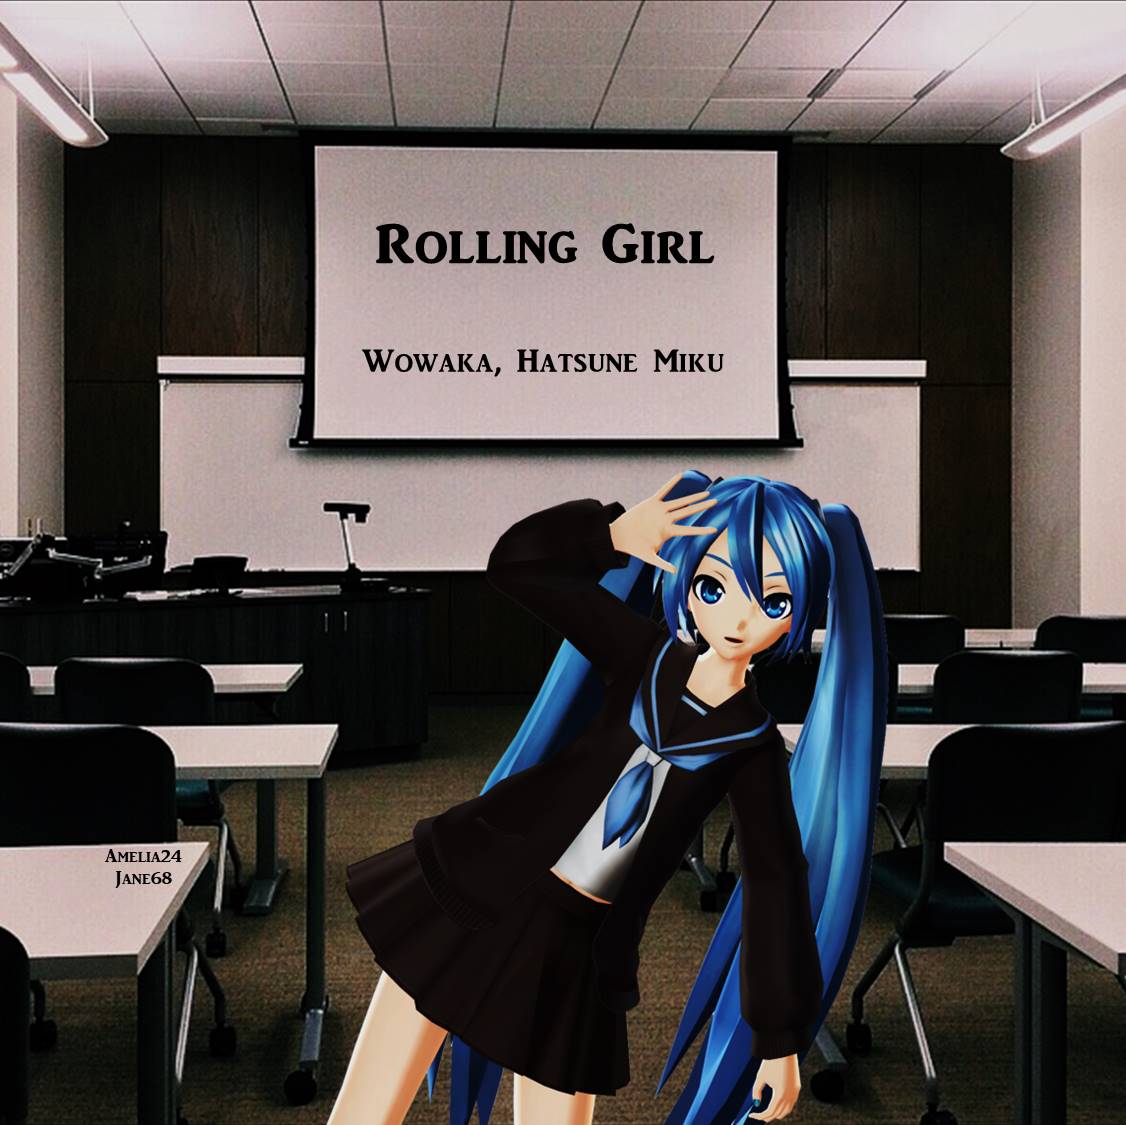  Rolling Girl দ্বারা Wowaka, Hatsune Miku